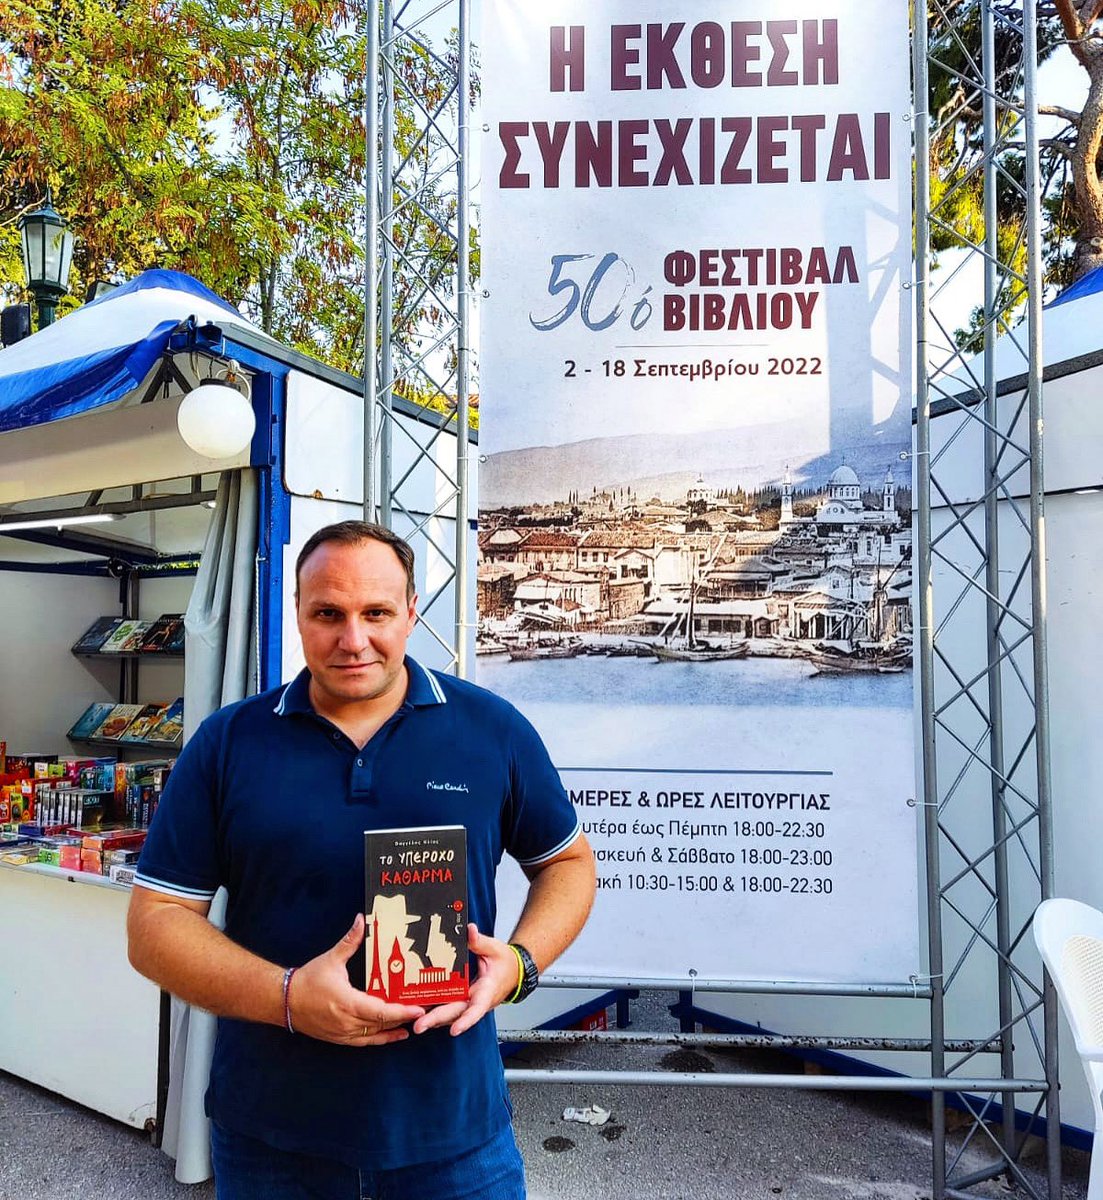 Η ΕΚΘΕΣΗ ΣΥΝΕΧΙΖΕΤΑΙ!
Στο Ζάππειο, στο περίπτερο 128-130 των Εκδόσεων ΠΗΓΗ, παρέα με το βιβλίο μου «ΤΟ ΥΠΕΡΟΧΟ ΚΑΘΑΡΜΑ»!
#50οφεστιβάλβιβλίου #bookfestival #ζαππειο #υπεροχοκαθαρμα #greekwriters #αστυνομικο #diavazopantou #diavazo #greekbooks #greekbooklovers #vivliofagos #βιβλίο